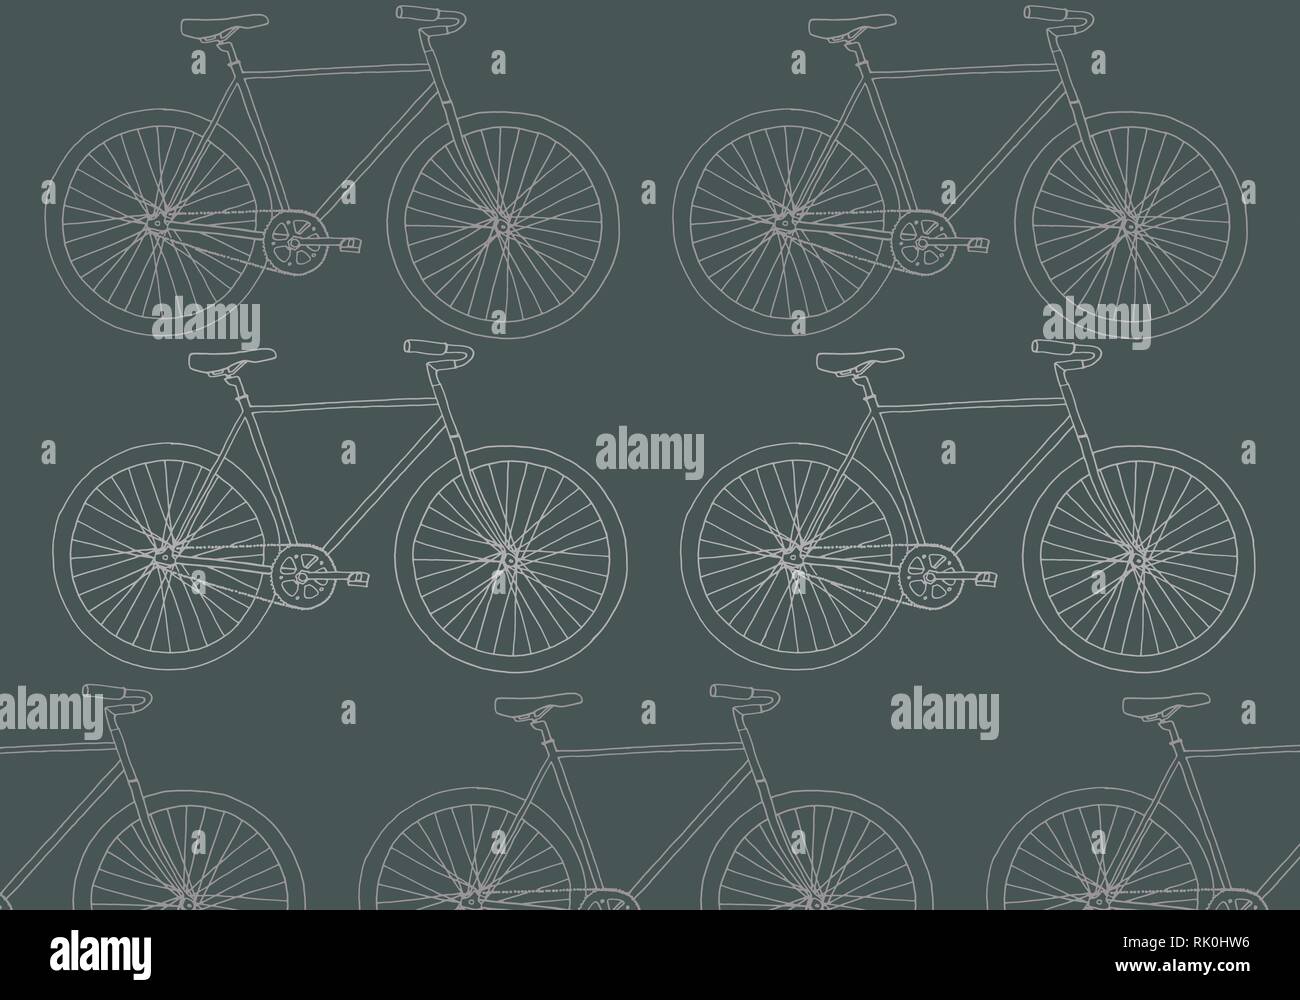 Disegnata a mano hipster bike modello di vettore di immagine in grigio nella tavolozza dei colori Illustrazione Vettoriale